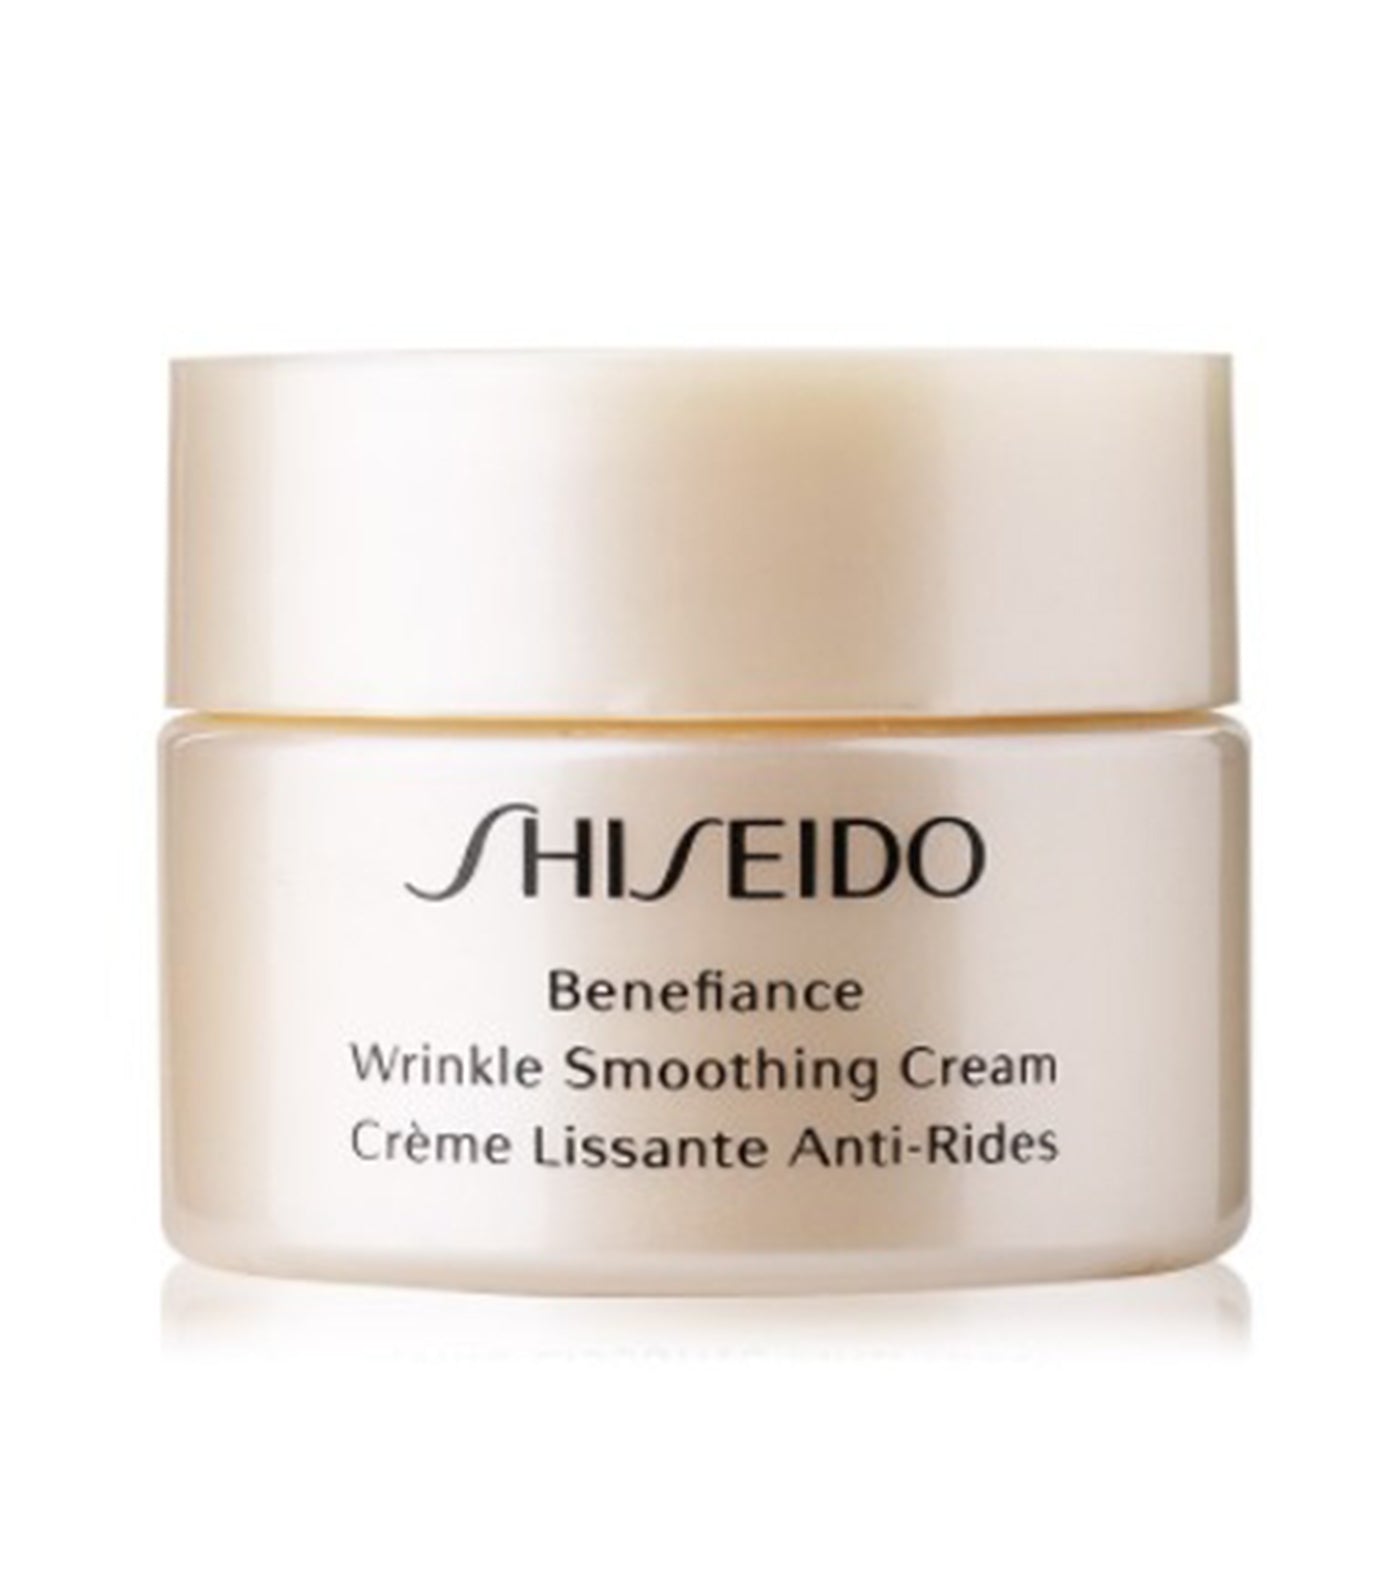 Free Mini Benefiance Wrinkle Smoothing Cream